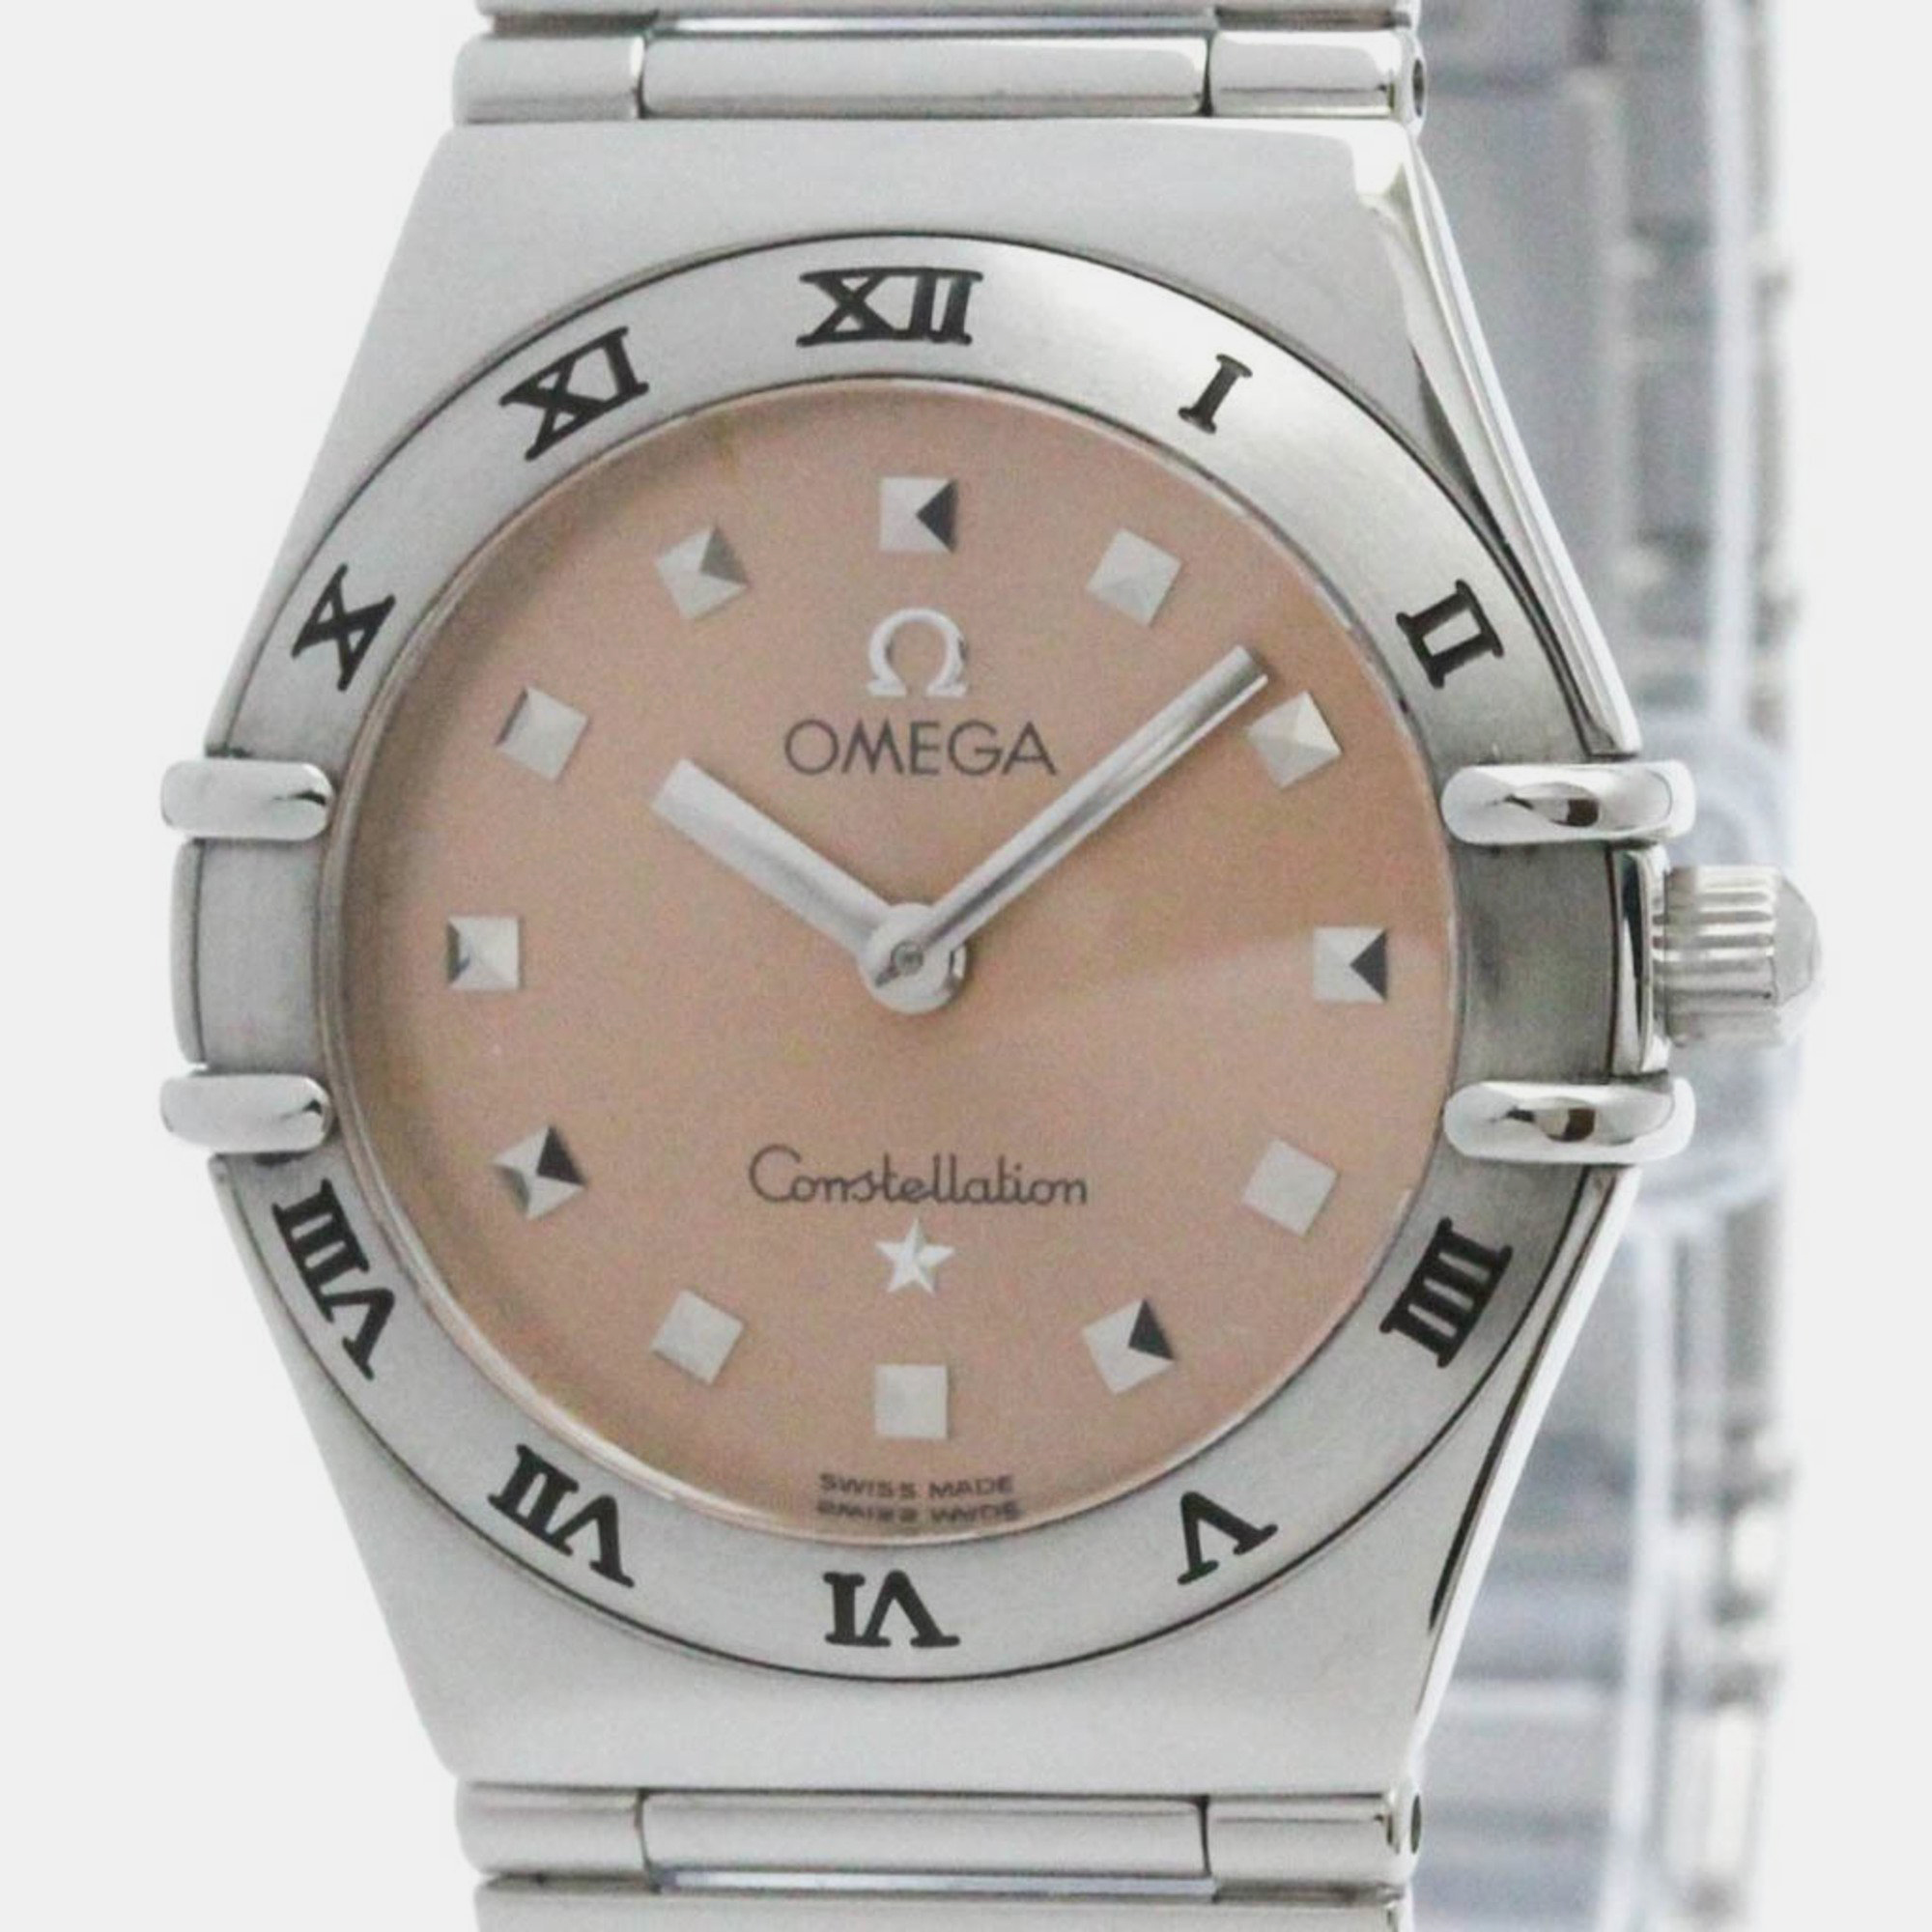 

Omega Orange Stainless Steel Constellation 1571.61 Quartz Women's Wristwatch 25 mm